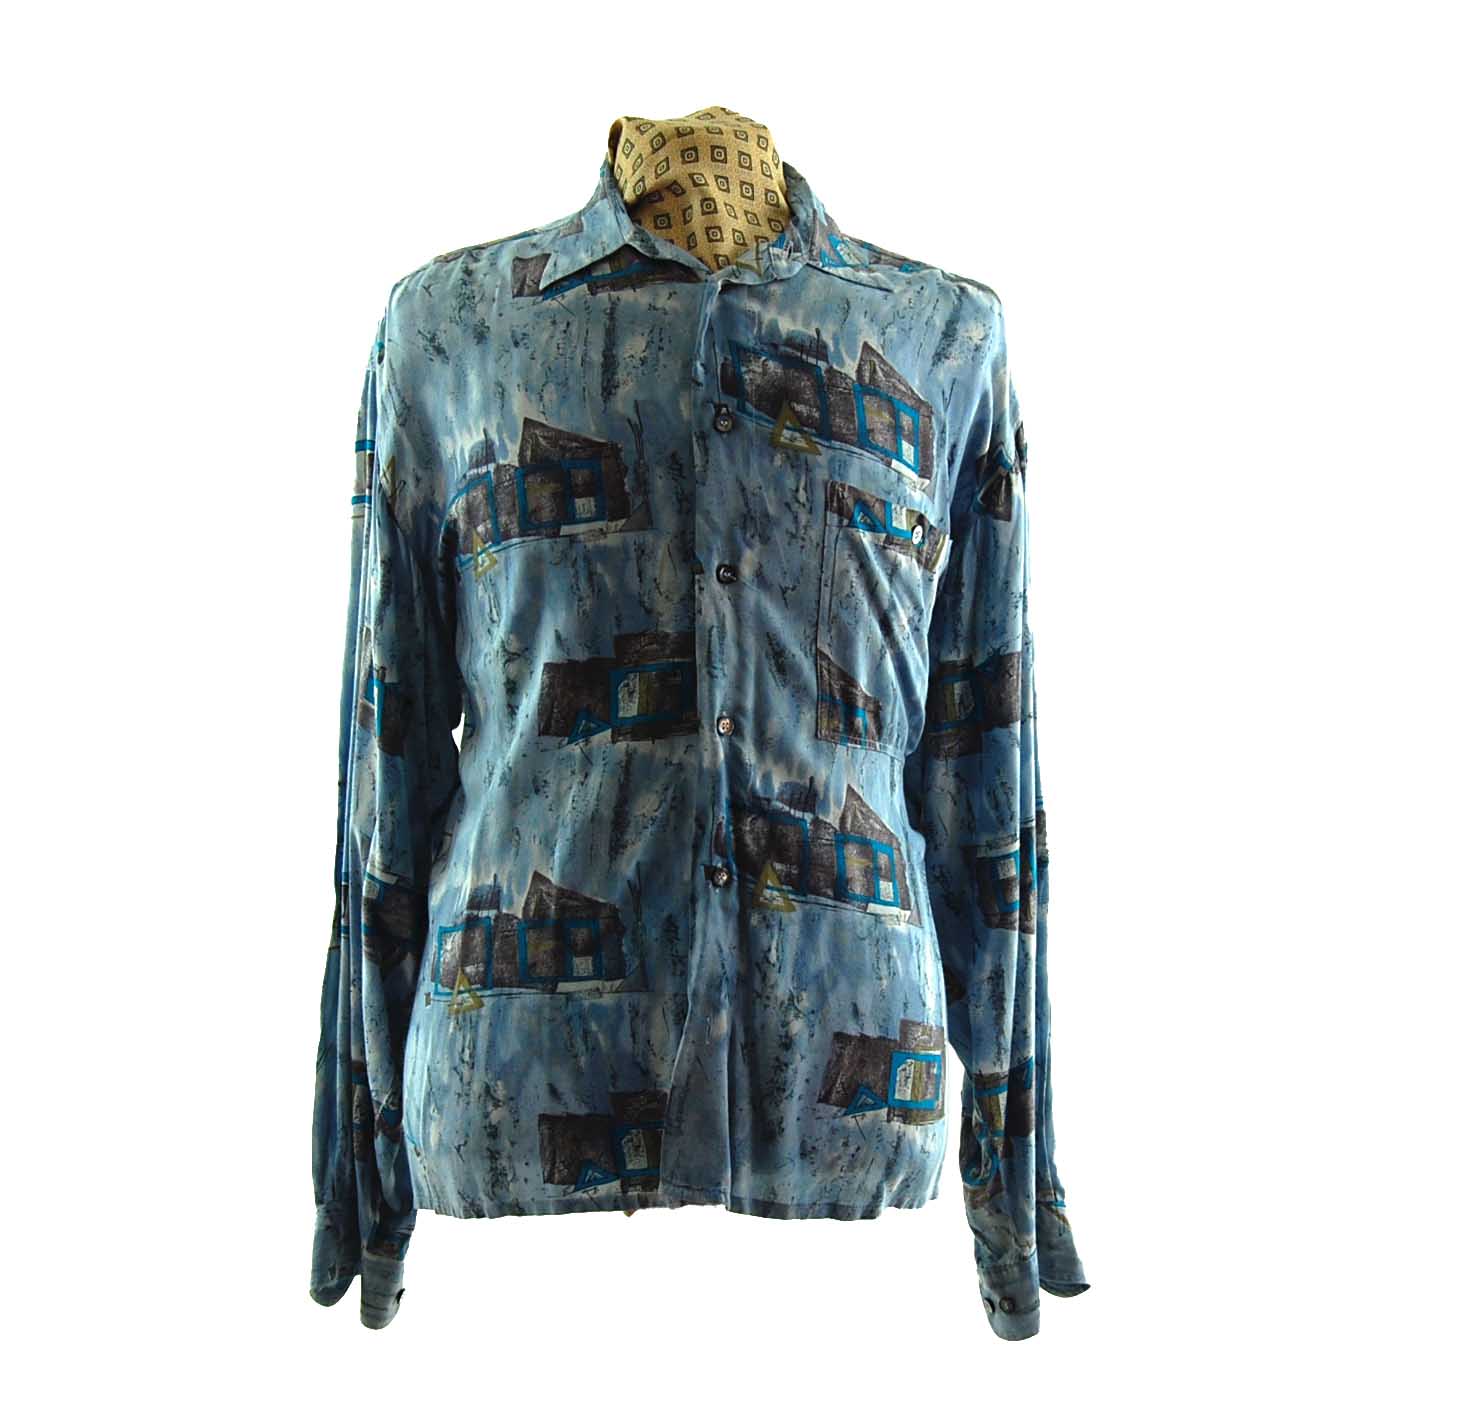 Western Outback Print Shirt - UK L - Blue 17 Vintage Clothing